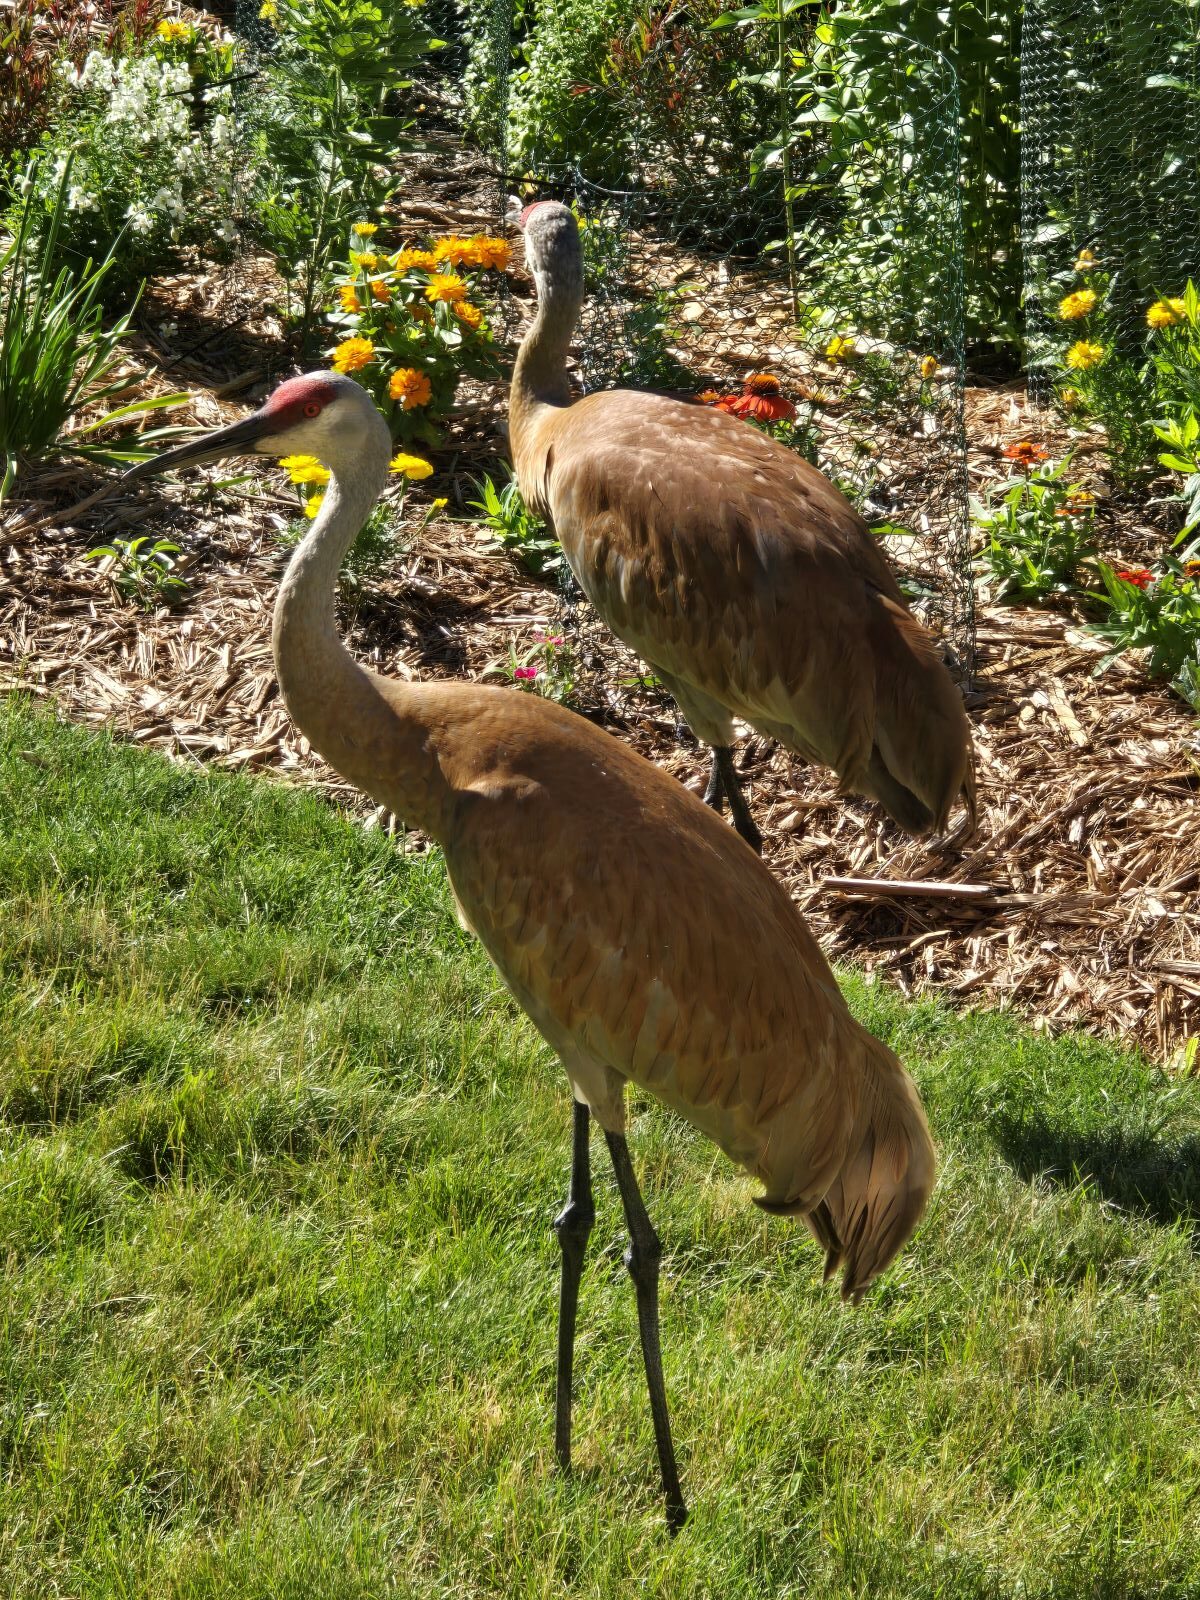 Sandhill Cranes in Wisconsin Garden by Larry Hurley